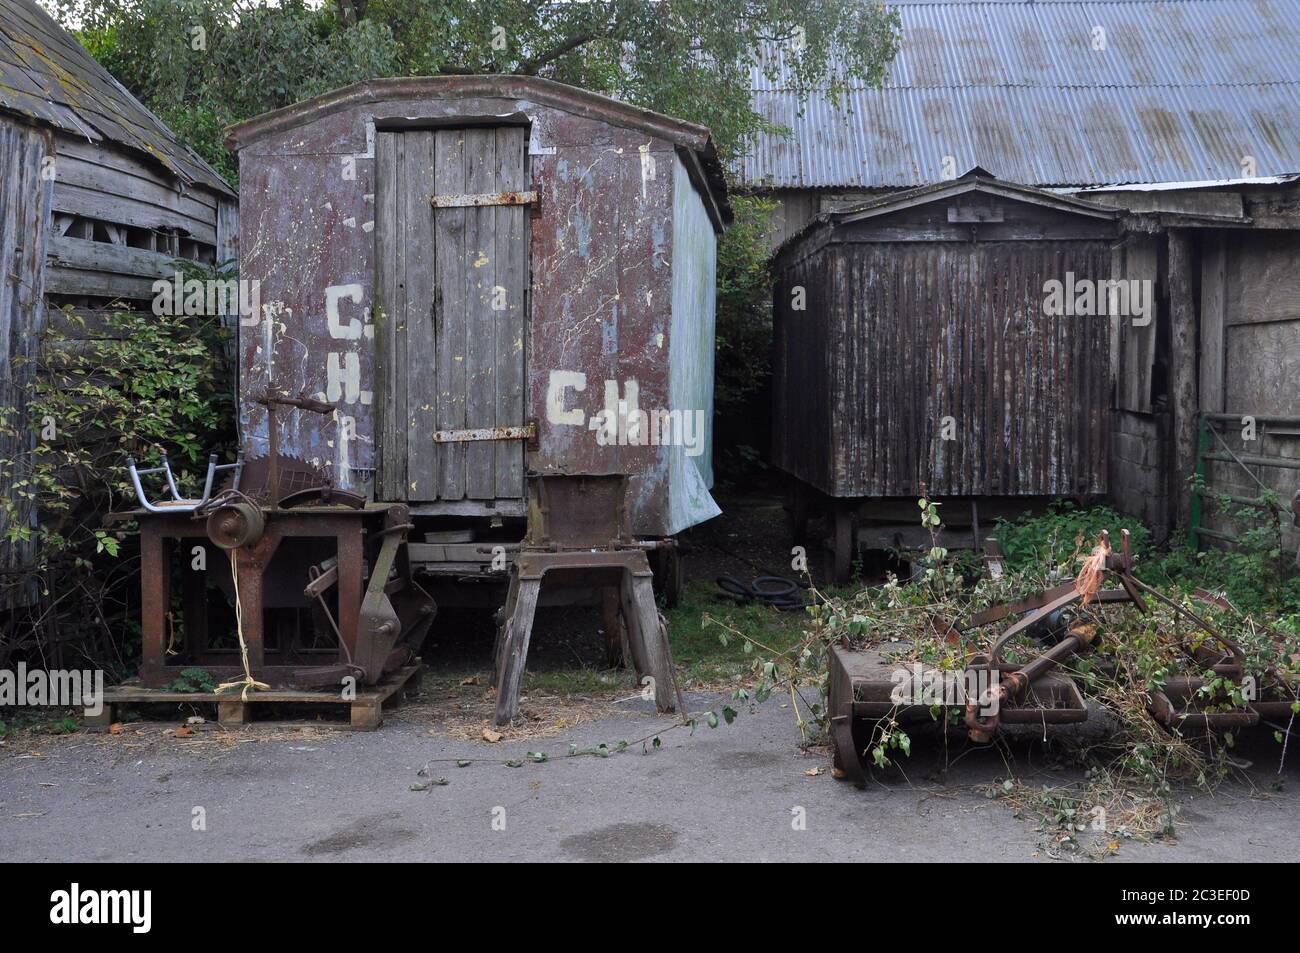 Veraltete Schäferhütten mit Rädern, die für die Lagerung und alte Landmaschinen in einem Hof in Purbeck in Dorset.UK verwendet wurden Stockfoto